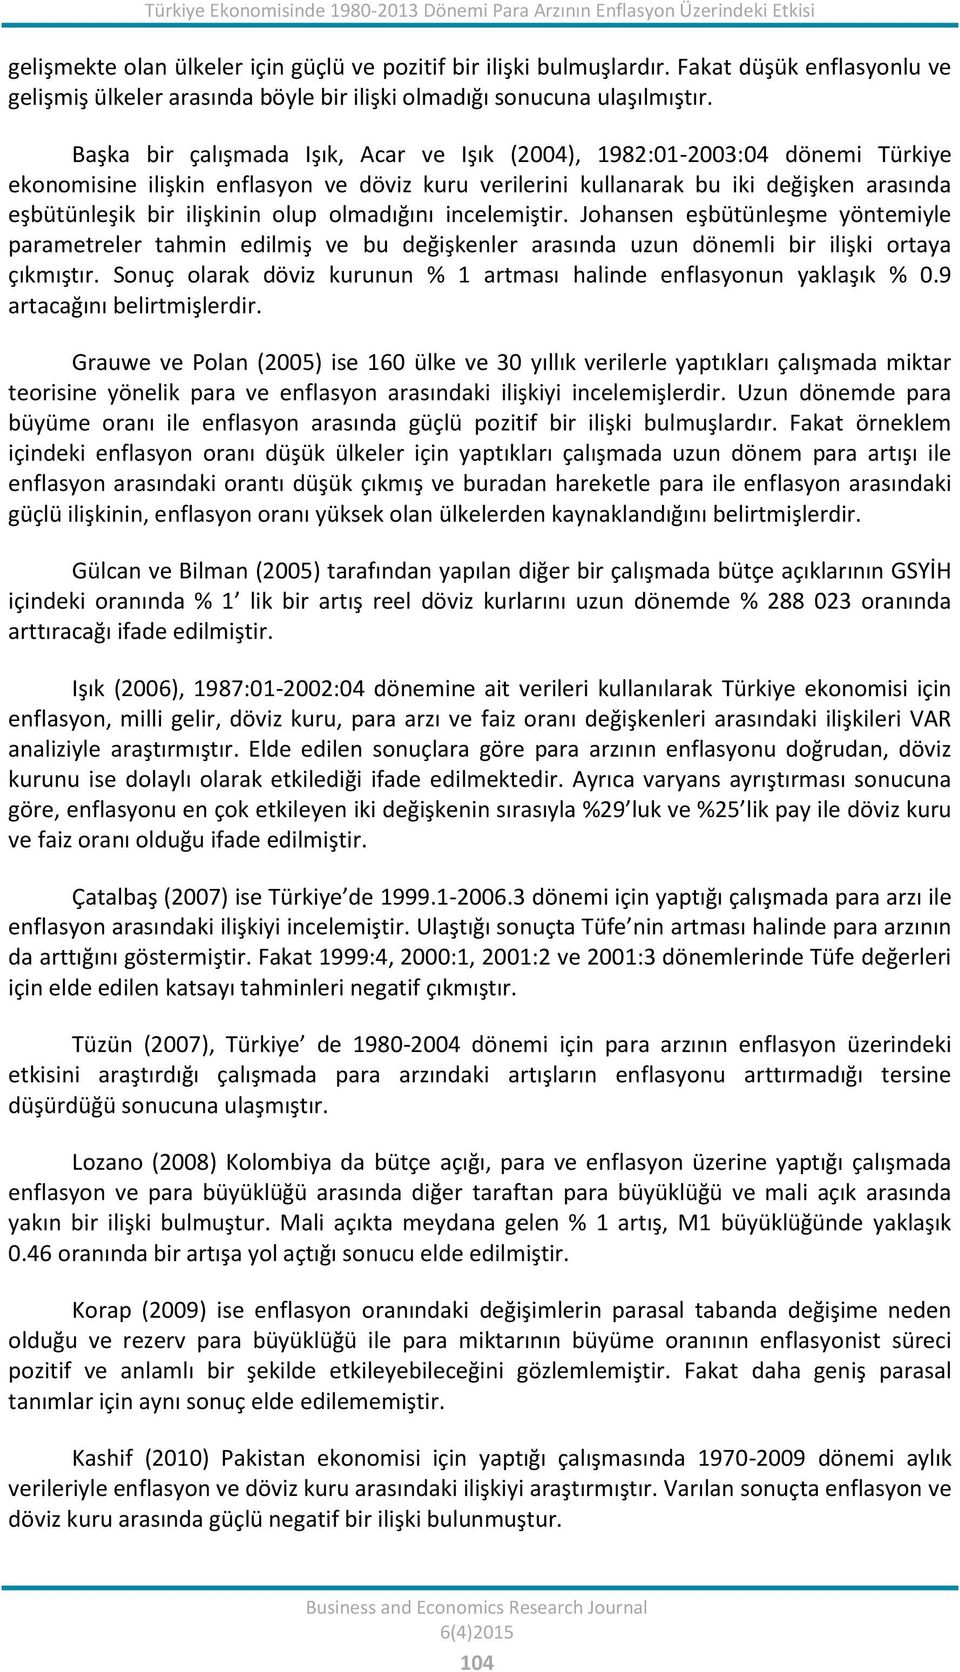 Başka bir çalışmada Işık, Acar ve Işık (2004), 1982:01-2003:04 dönemi Türkiye ekonomisine ilişkin enflasyon ve döviz kuru verilerini kullanarak bu iki değişken arasında eşbütünleşik bir ilişkinin